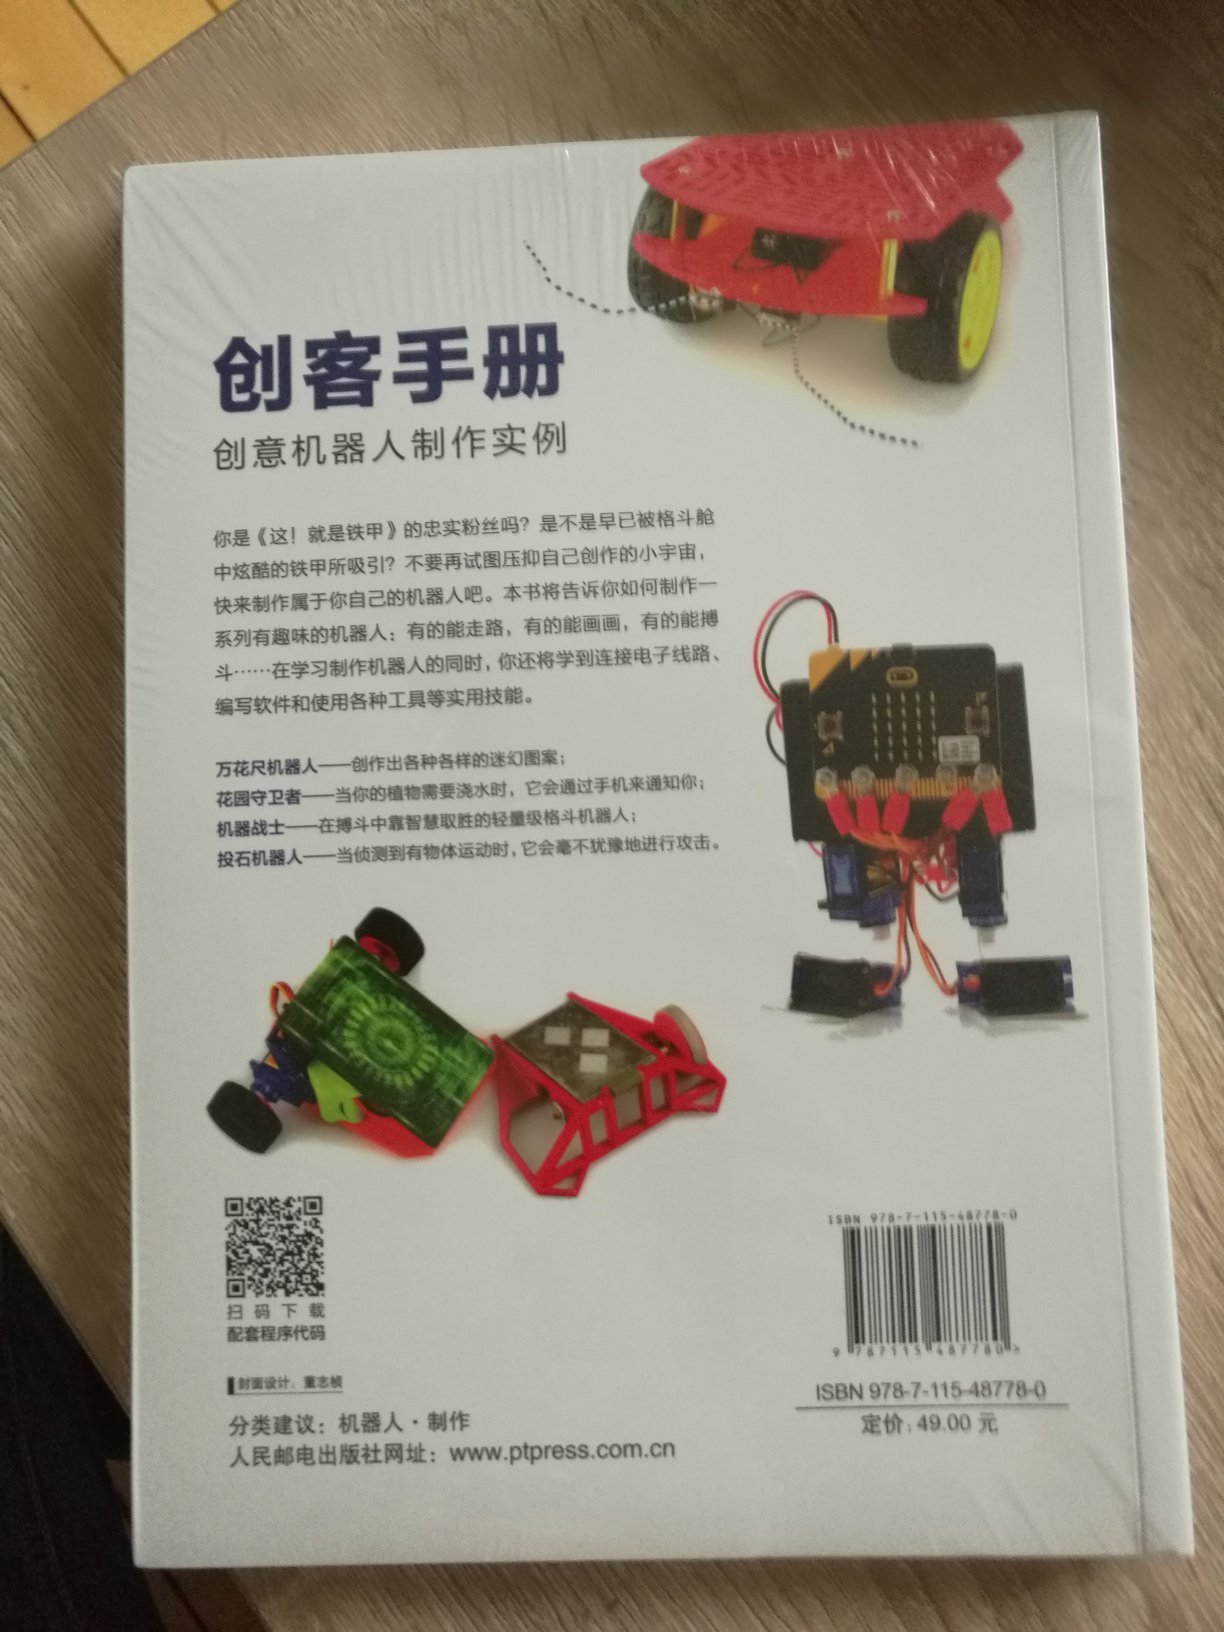 儿子上机器人课用的参考书。书内容还不错，就是比较薄，希望对儿子机器人课程有些帮助吧！